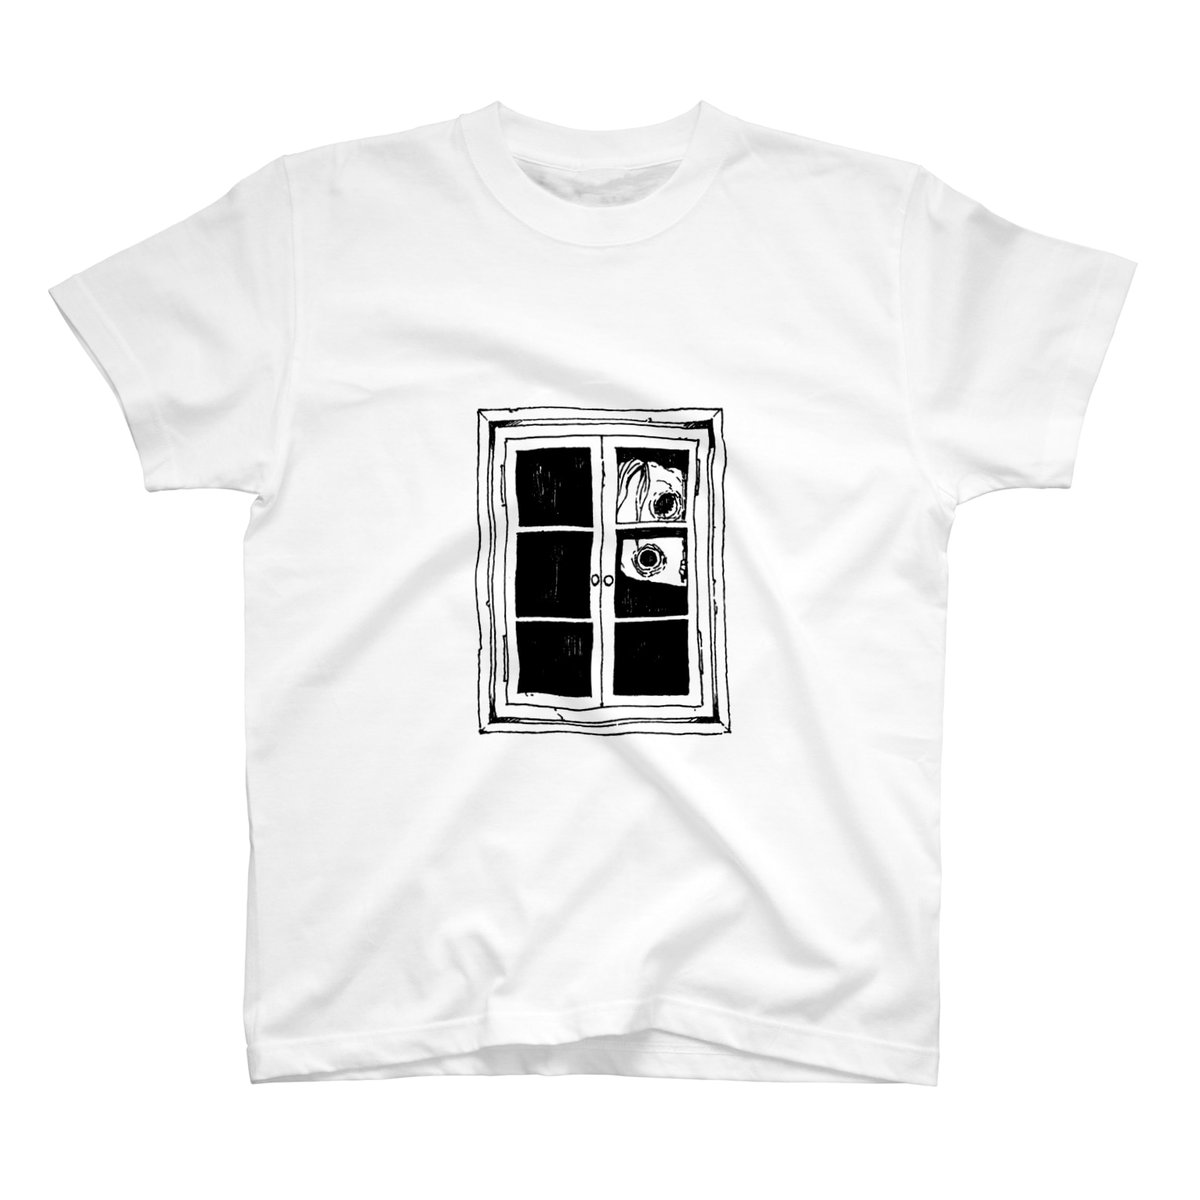 6/8までTシャツ1000円オフですってよ!!
新デザイン追加しました「ヤバい窓」

SUZURI→ https://t.co/6vpoydmyIr 